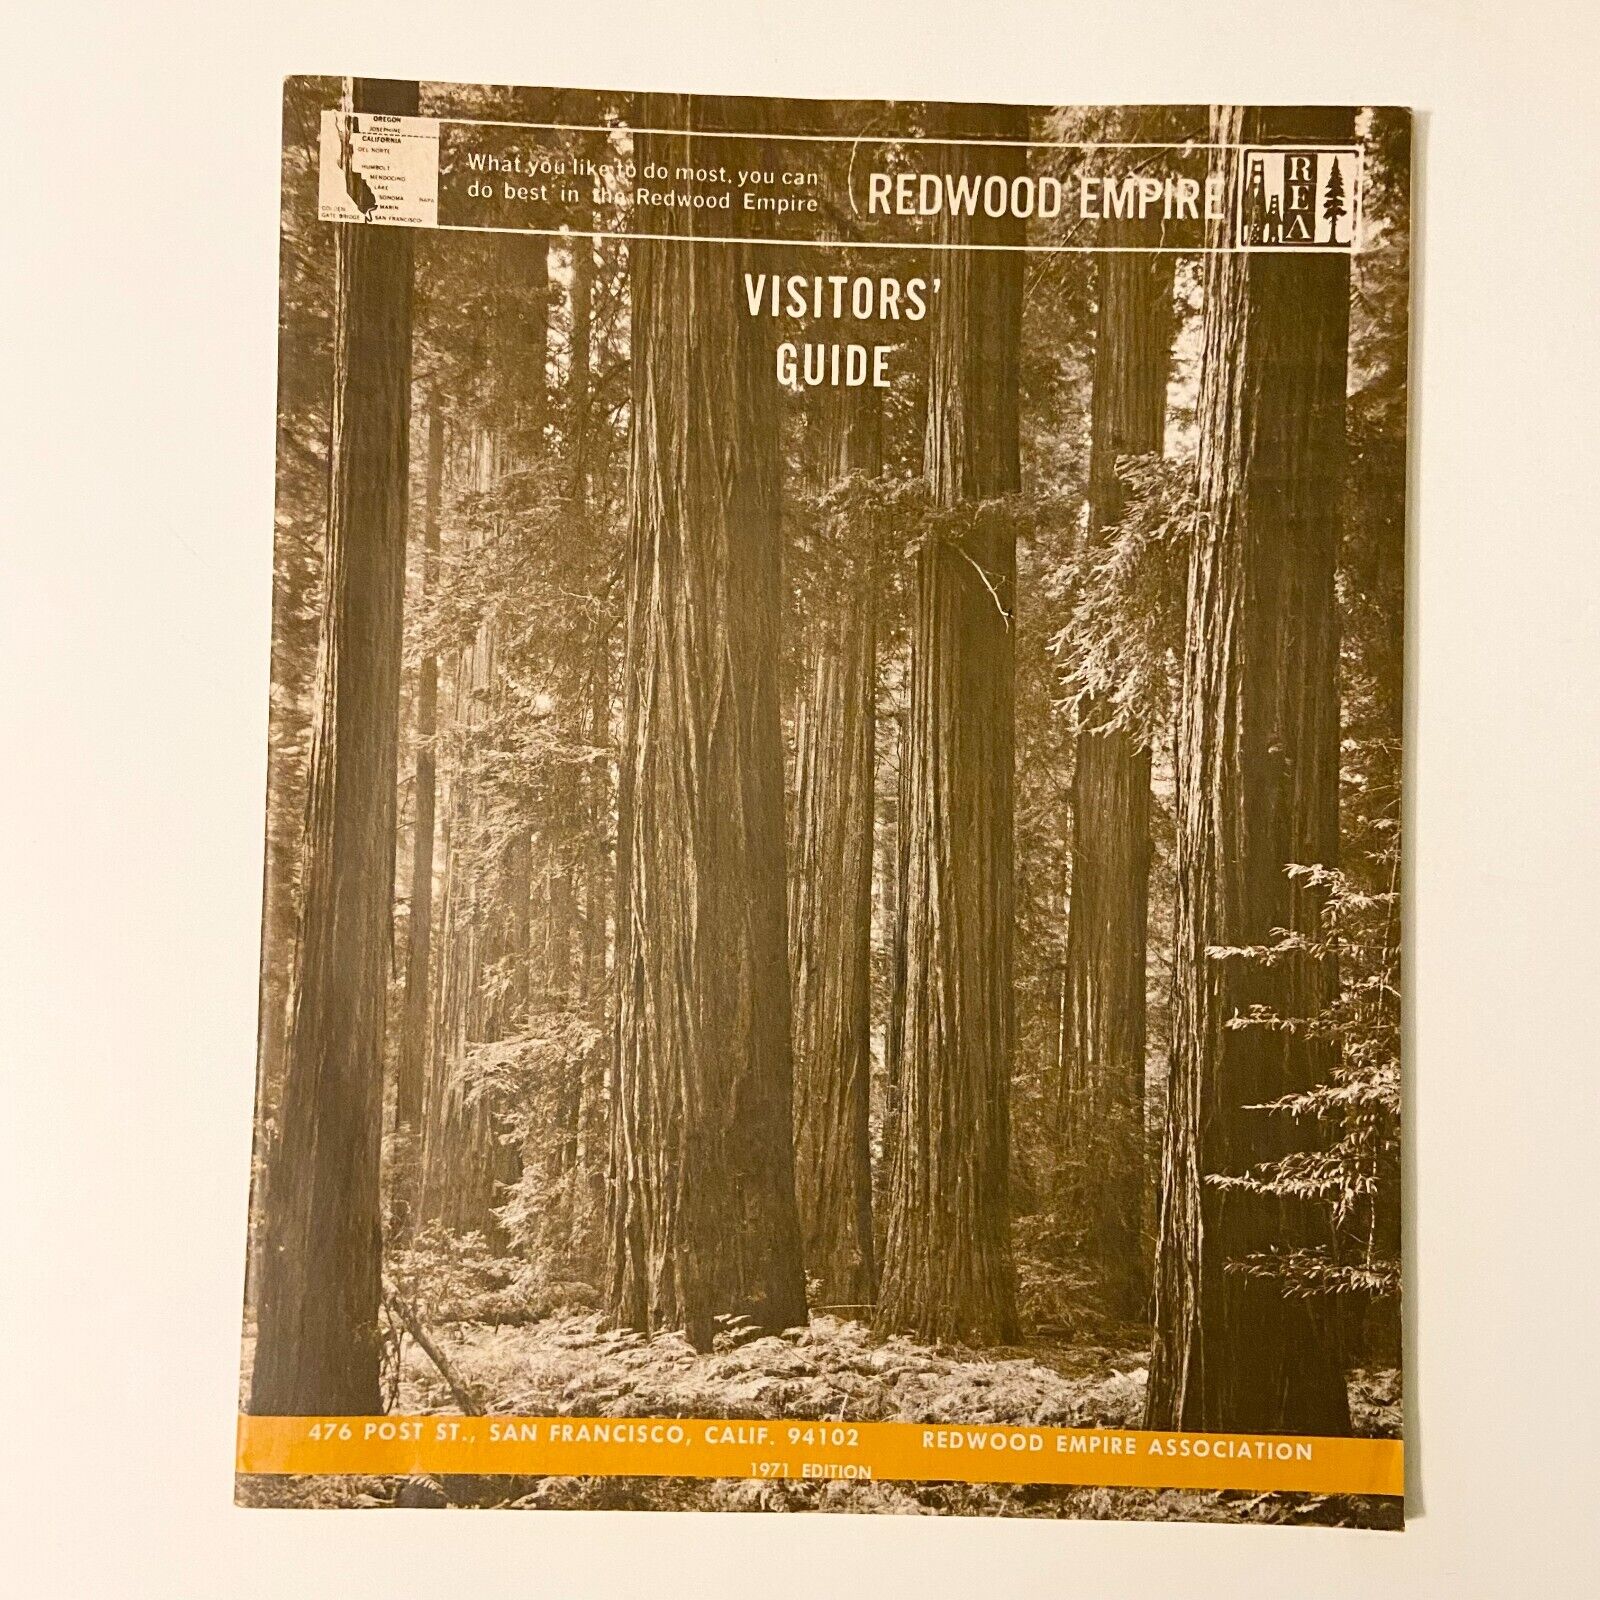 Vintage 1971 Redwood Empire Visitors Guide Travel Brochure Magazine Booklet